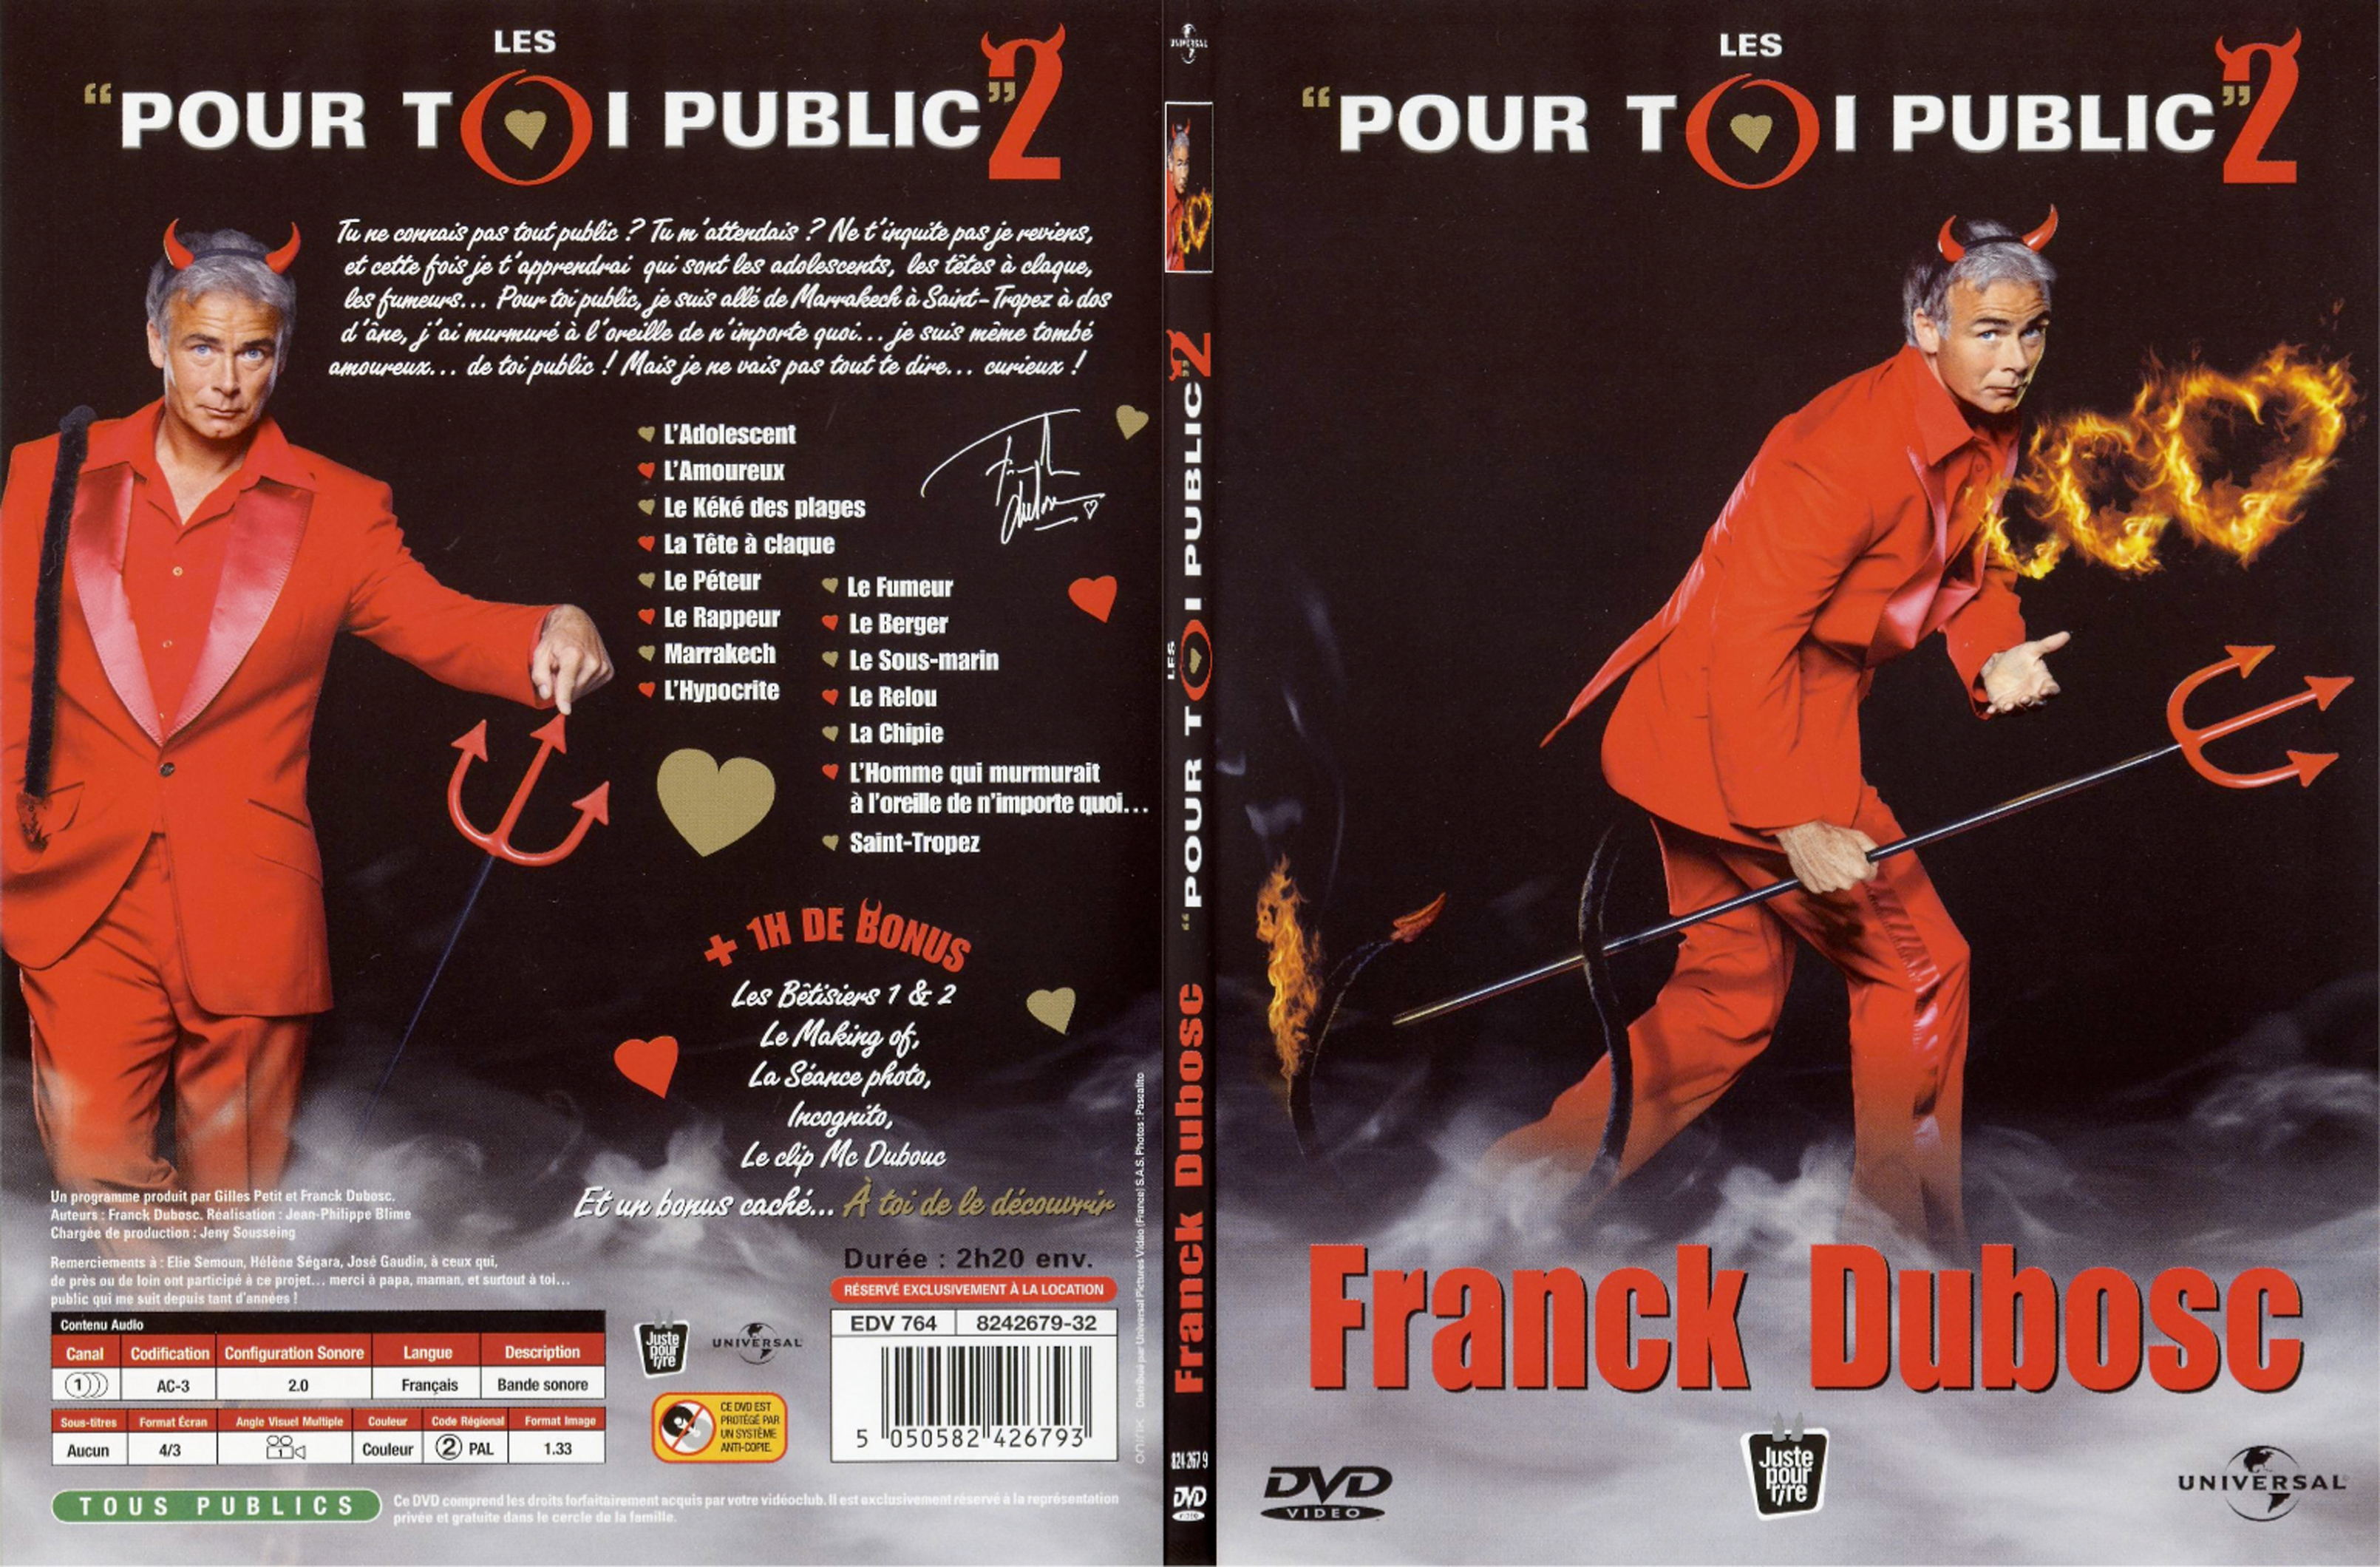 Jaquette DVD Franck Dubosc pour oi public 2 - SLIM